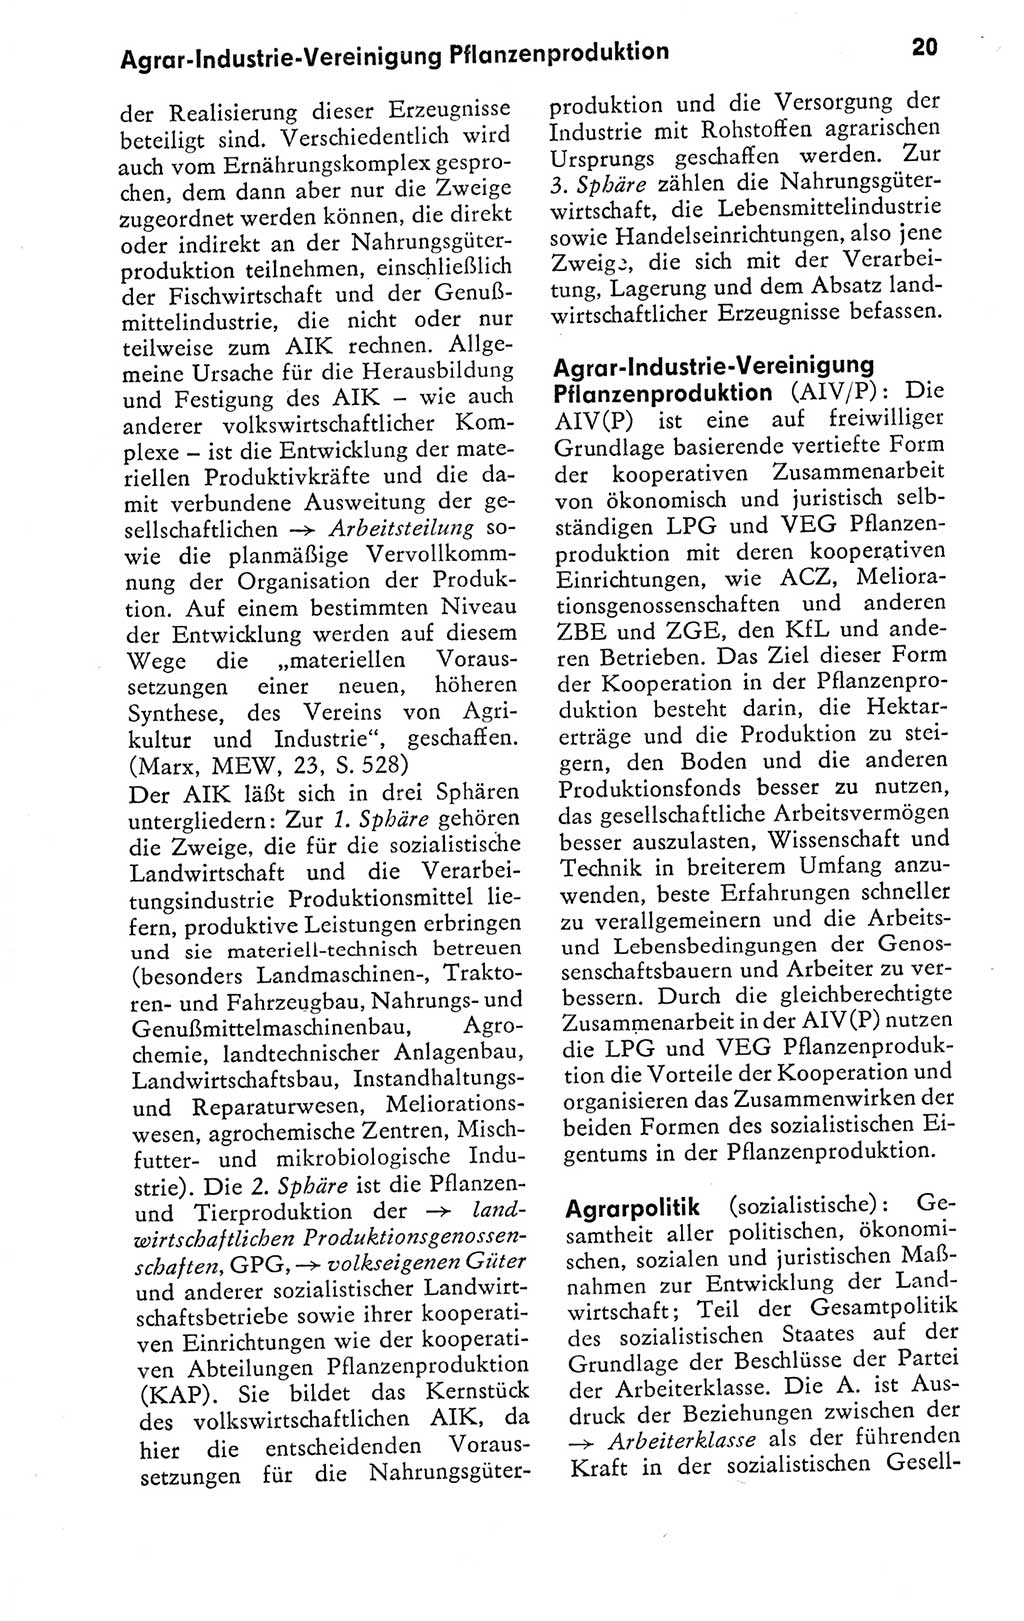 Kleines politisches Wörterbuch [Deutsche Demokratische Republik (DDR)] 1978, Seite 20 (Kl. pol. Wb. DDR 1978, S. 20)